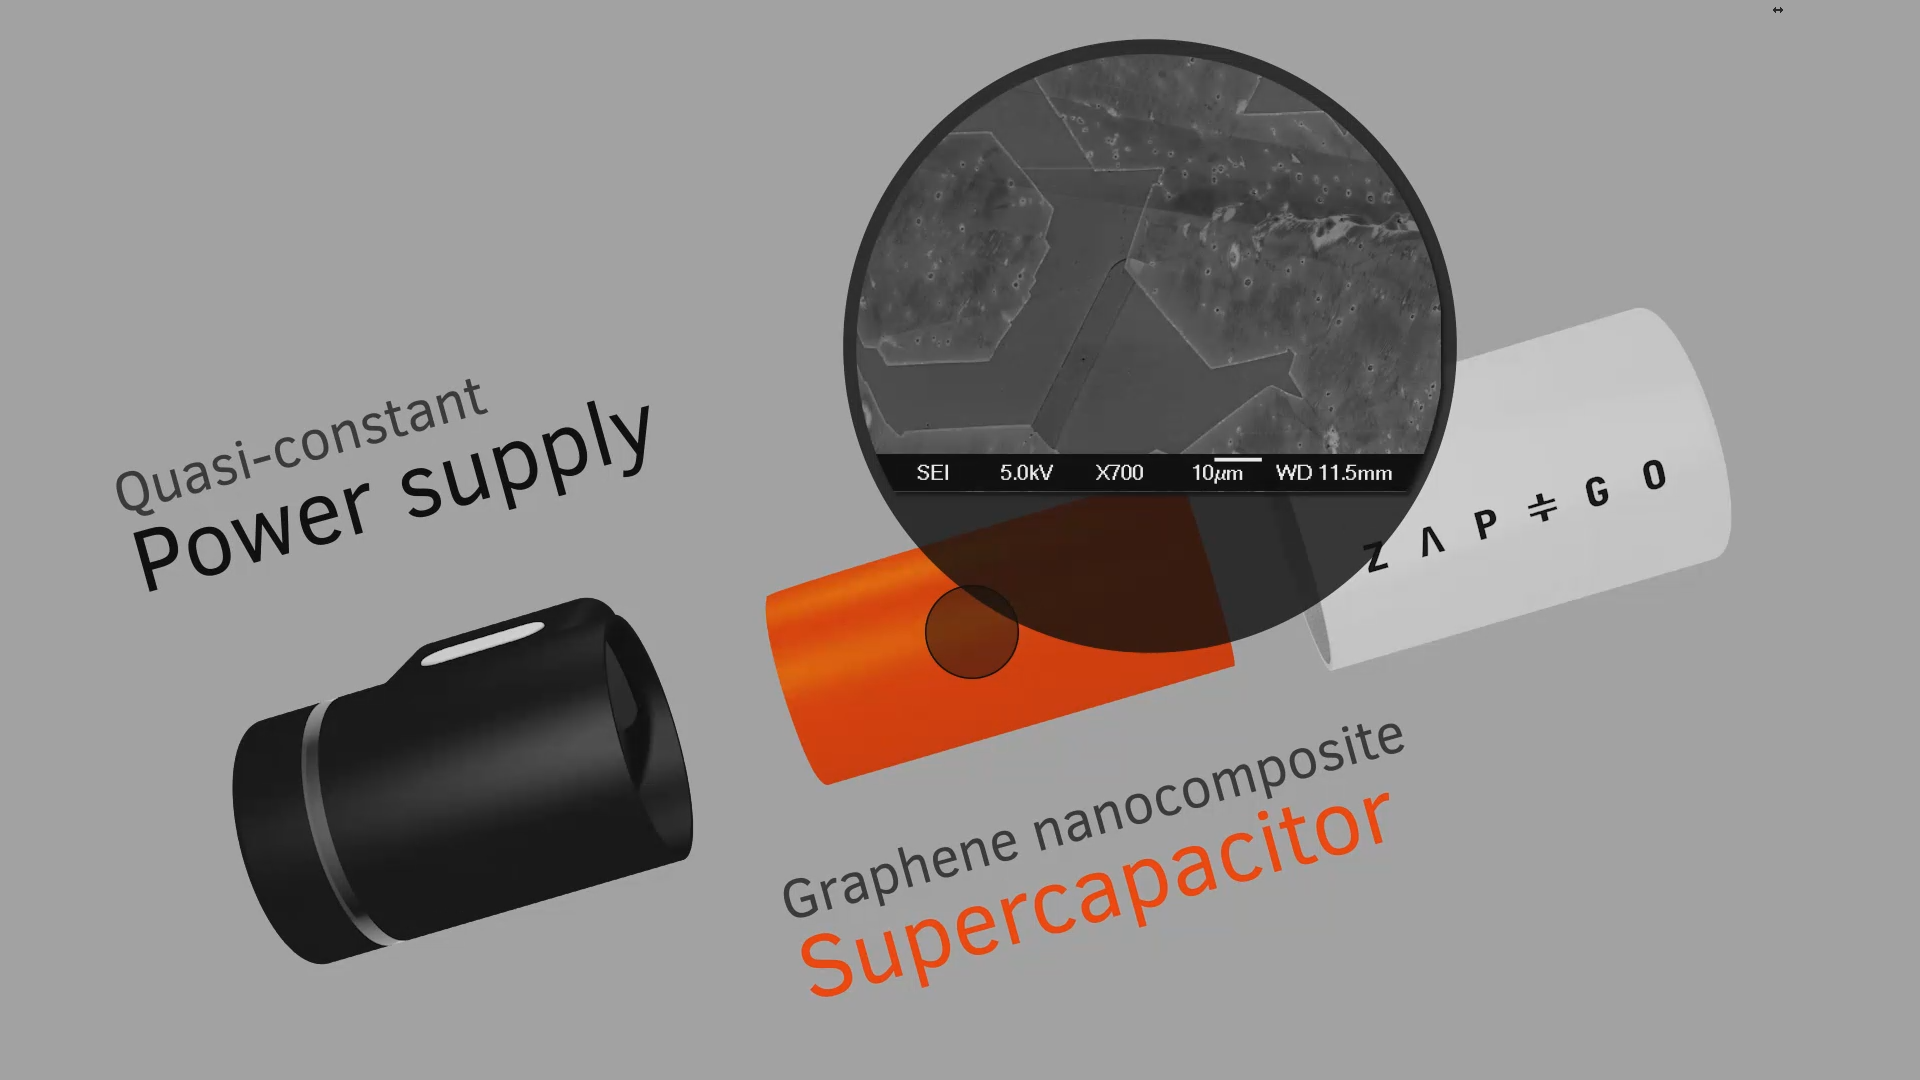 Siêu tụ graphene chính là điều làm nên tốc độ sạc siêu nhanh cho pin sạc di động Zap&Go